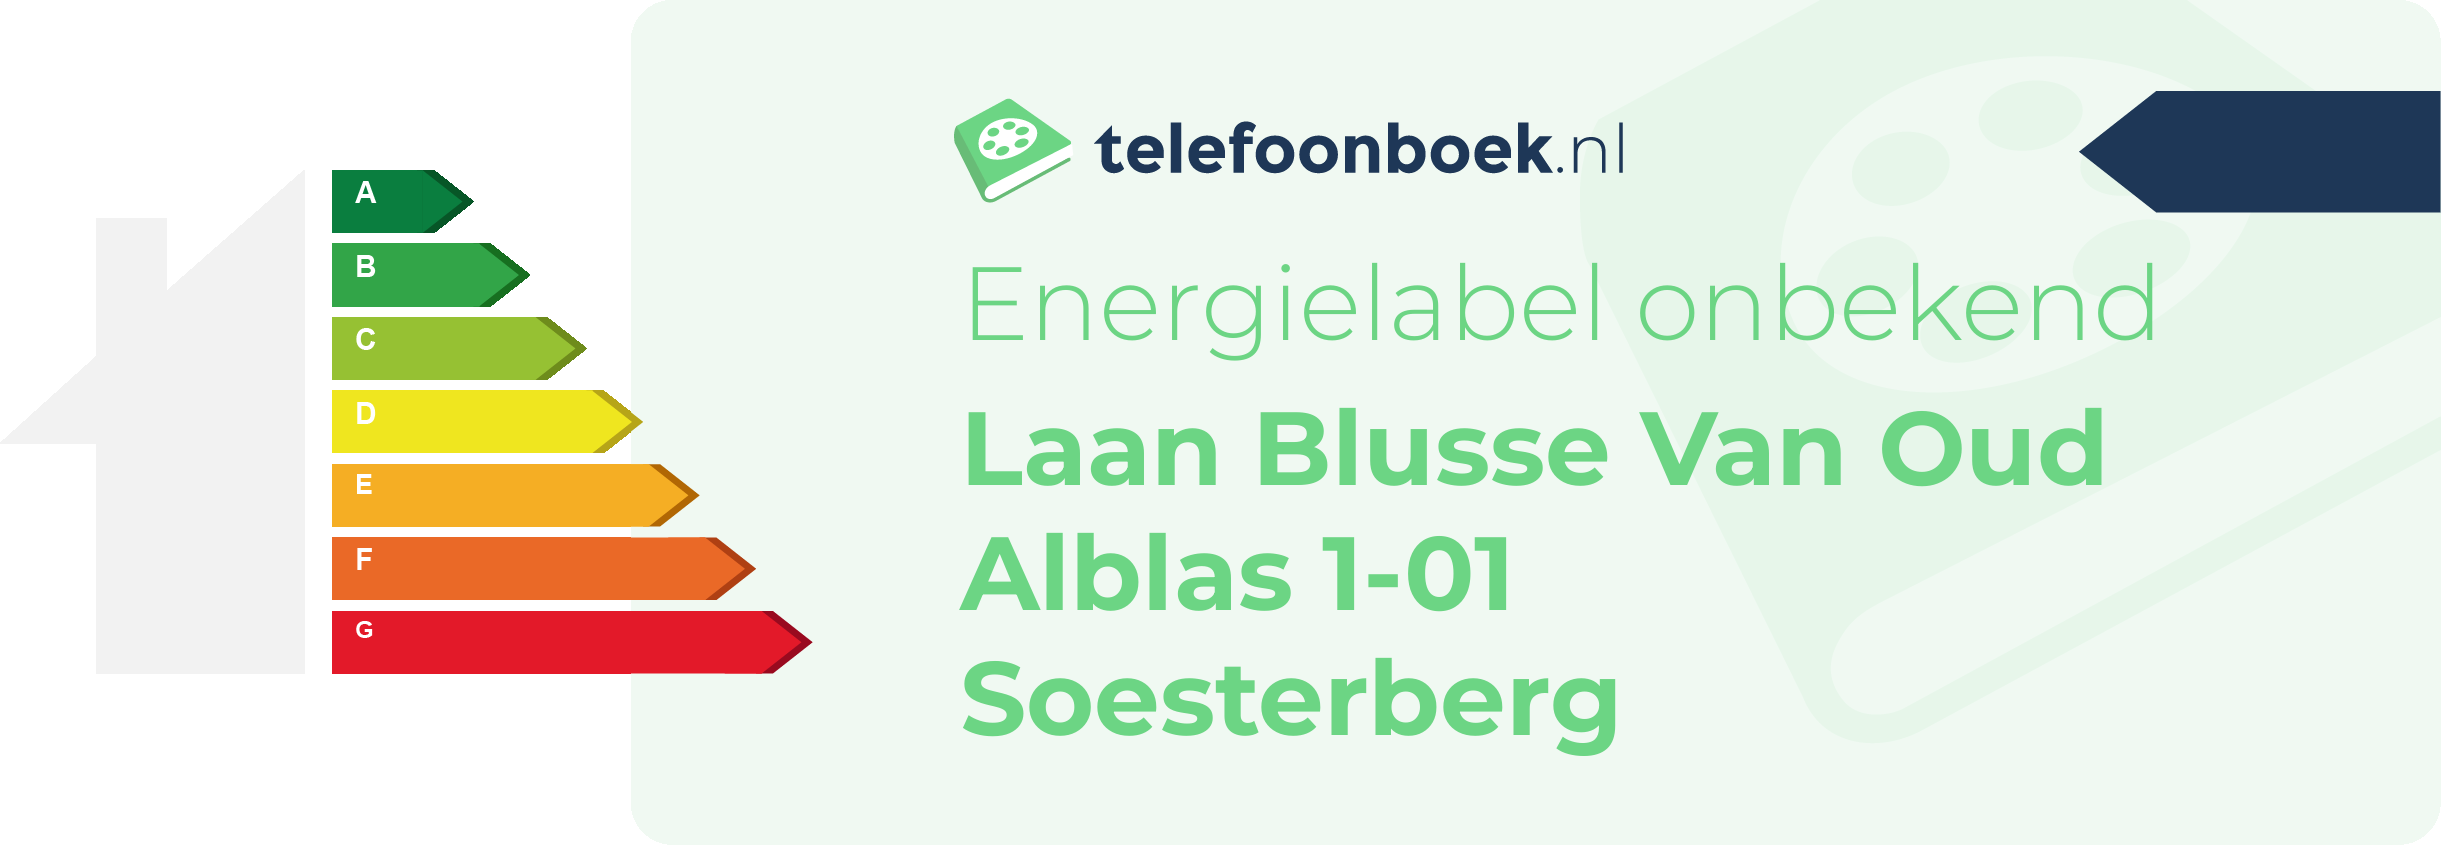 Energielabel Laan Blusse Van Oud Alblas 1-01 Soesterberg